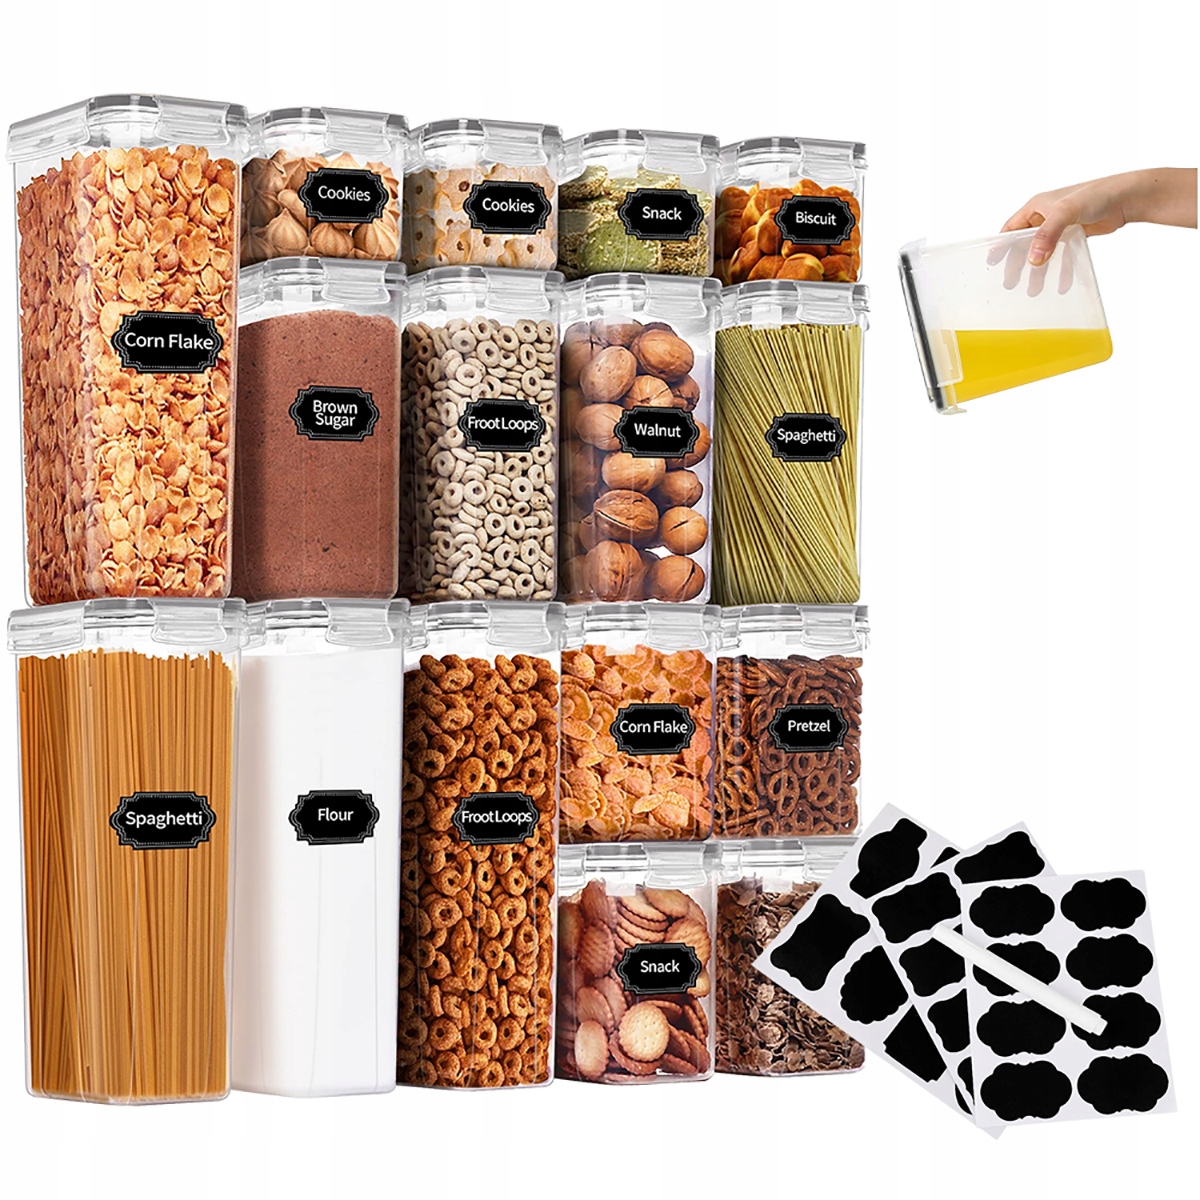 Pojemniki do Przechowywania Plastikowe Duże - Pojemniki na żywność -  Największy wybór pojemników, pudełek i słoików